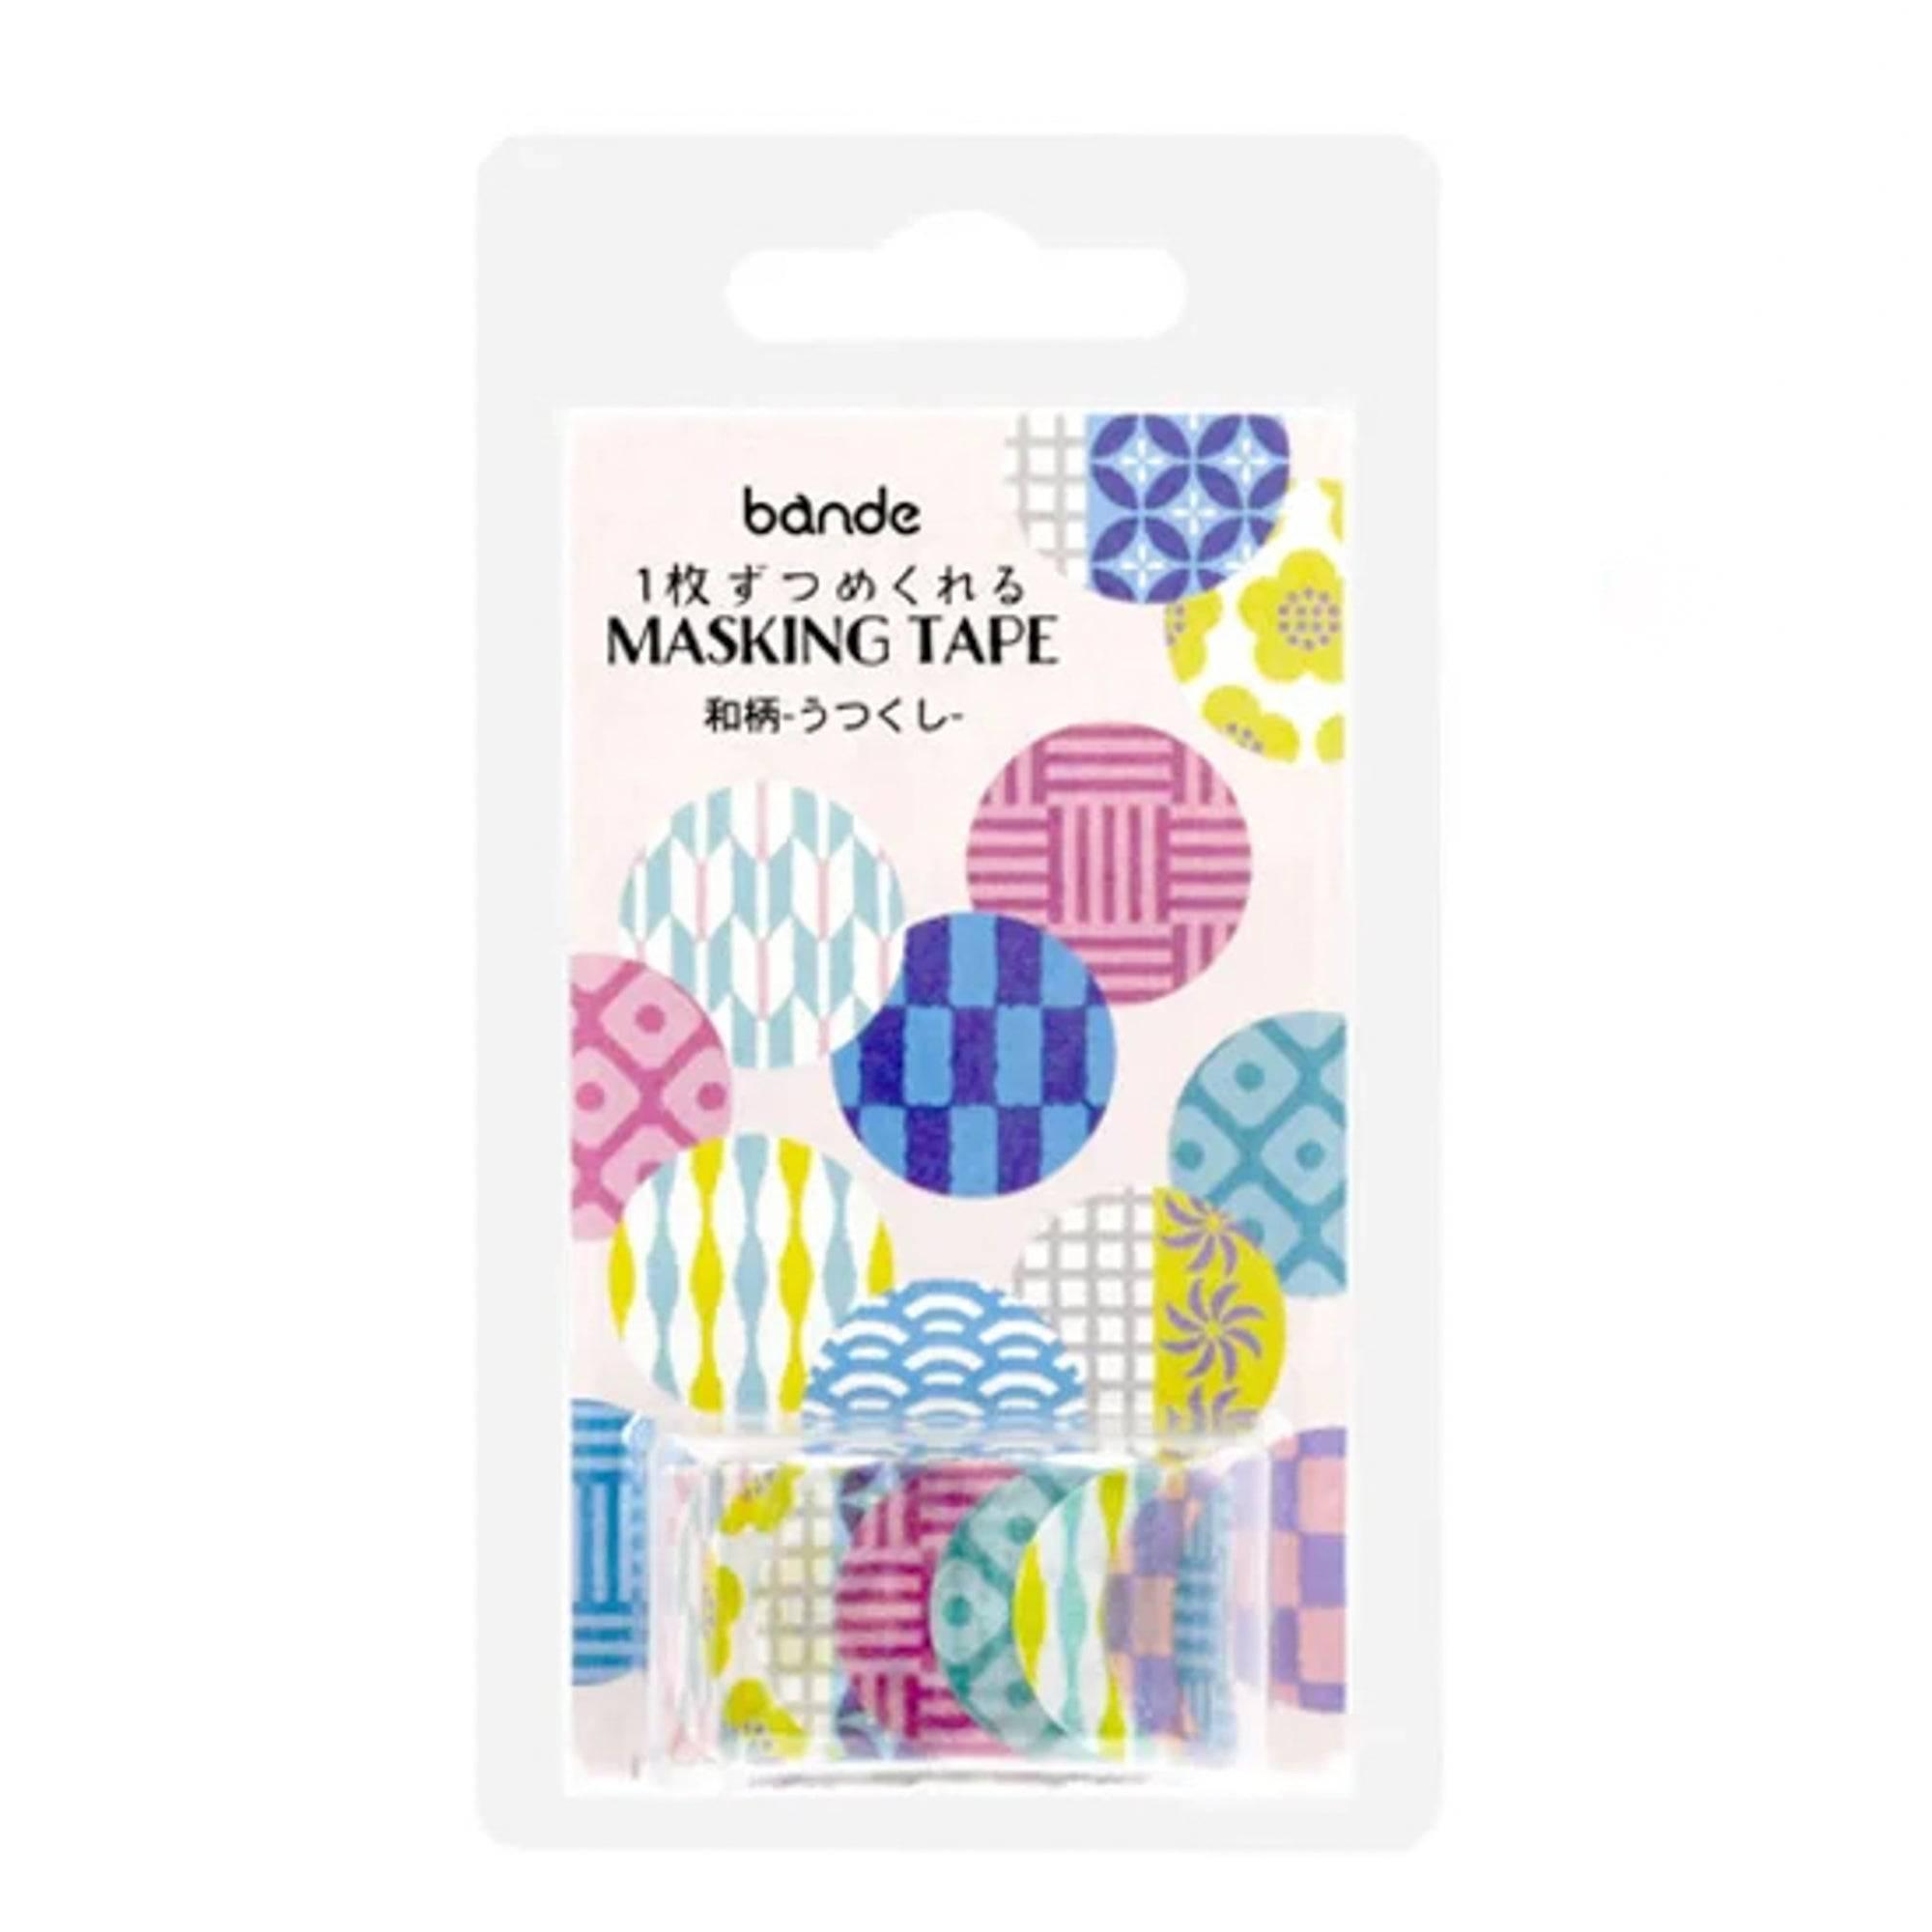 Beautiful Japanese Pattern Washi Tape Sticker Roll - Bande - Komorebi Stationery